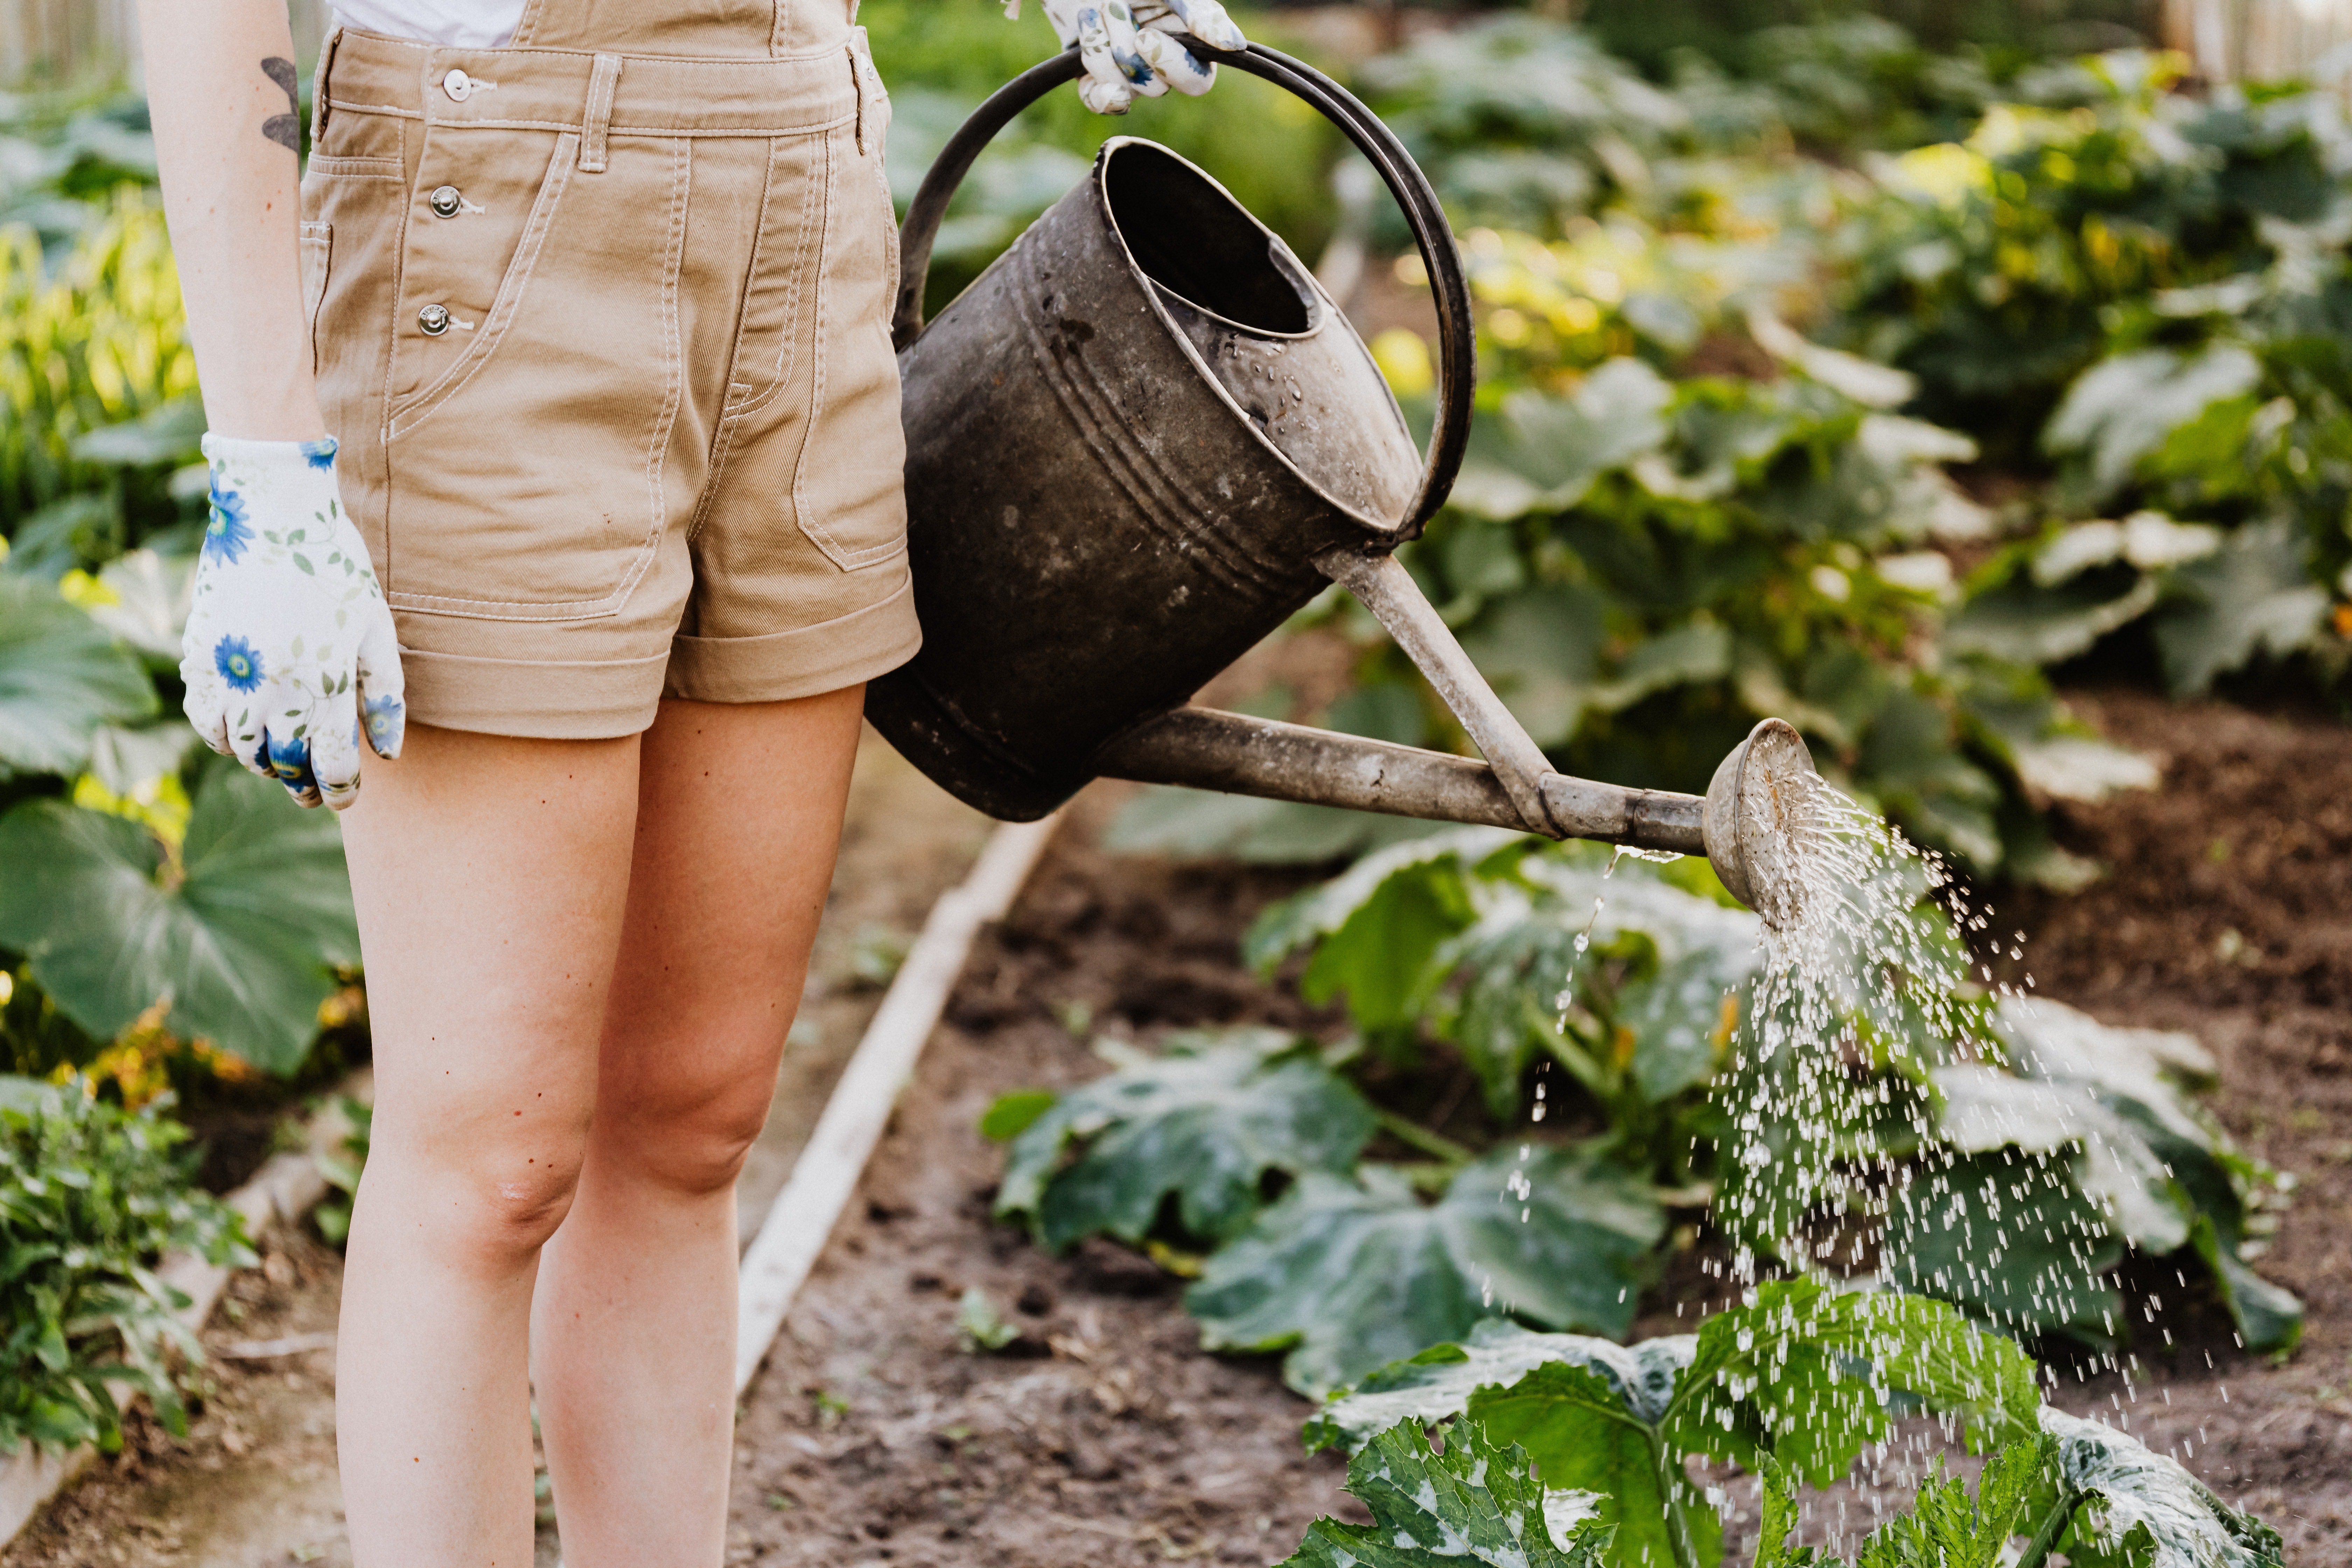 Tips to upgrading gardening skills